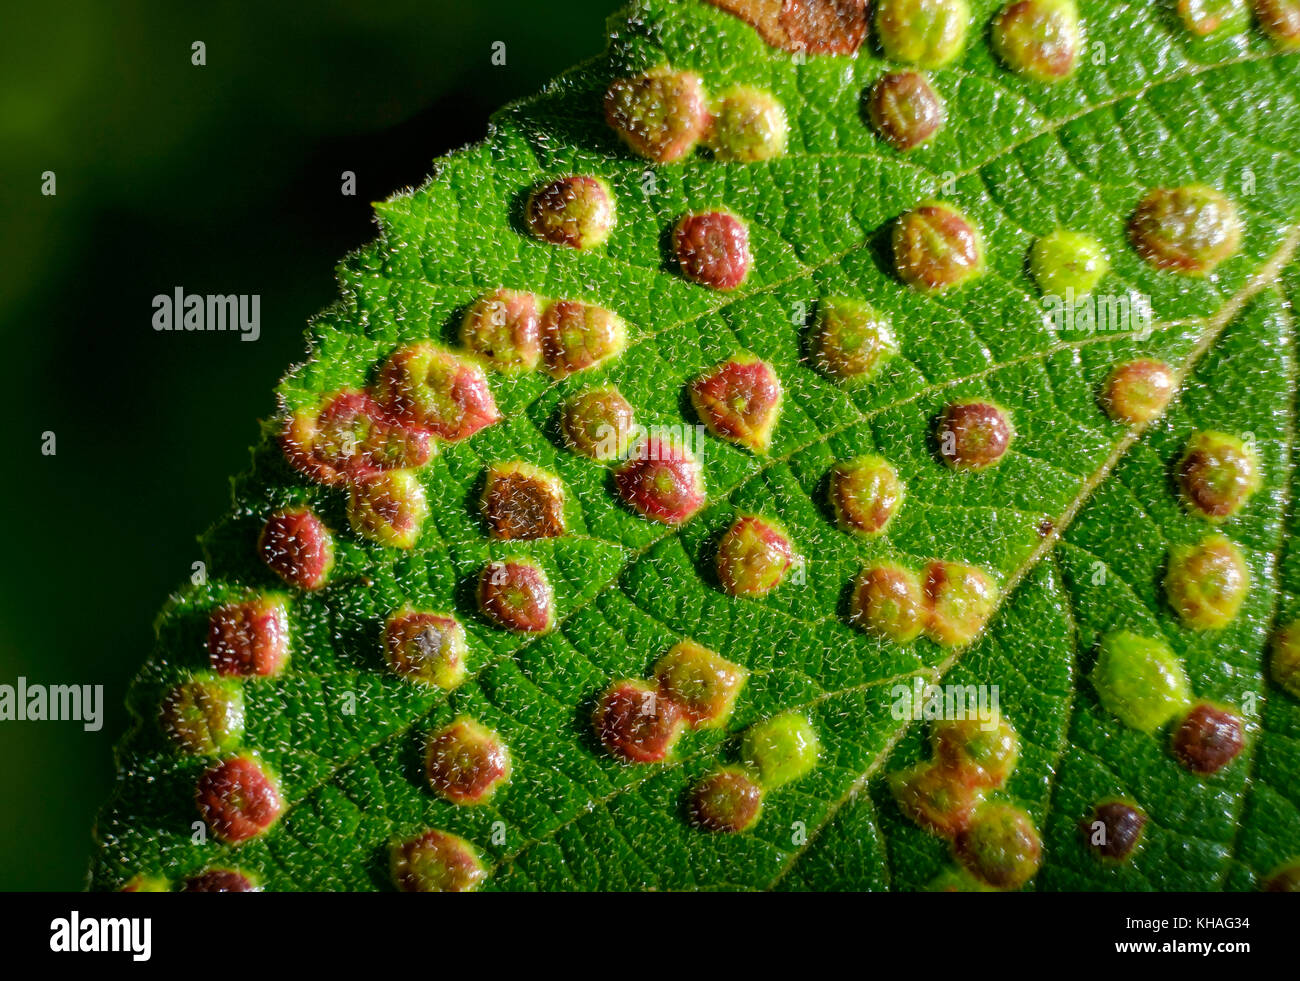 Gall ou de la vésicule biliaire la vésicule (phytoptus laevis) sur feuille de viburnum lantana (viburnum lantana), Bavière, Allemagne Banque D'Images